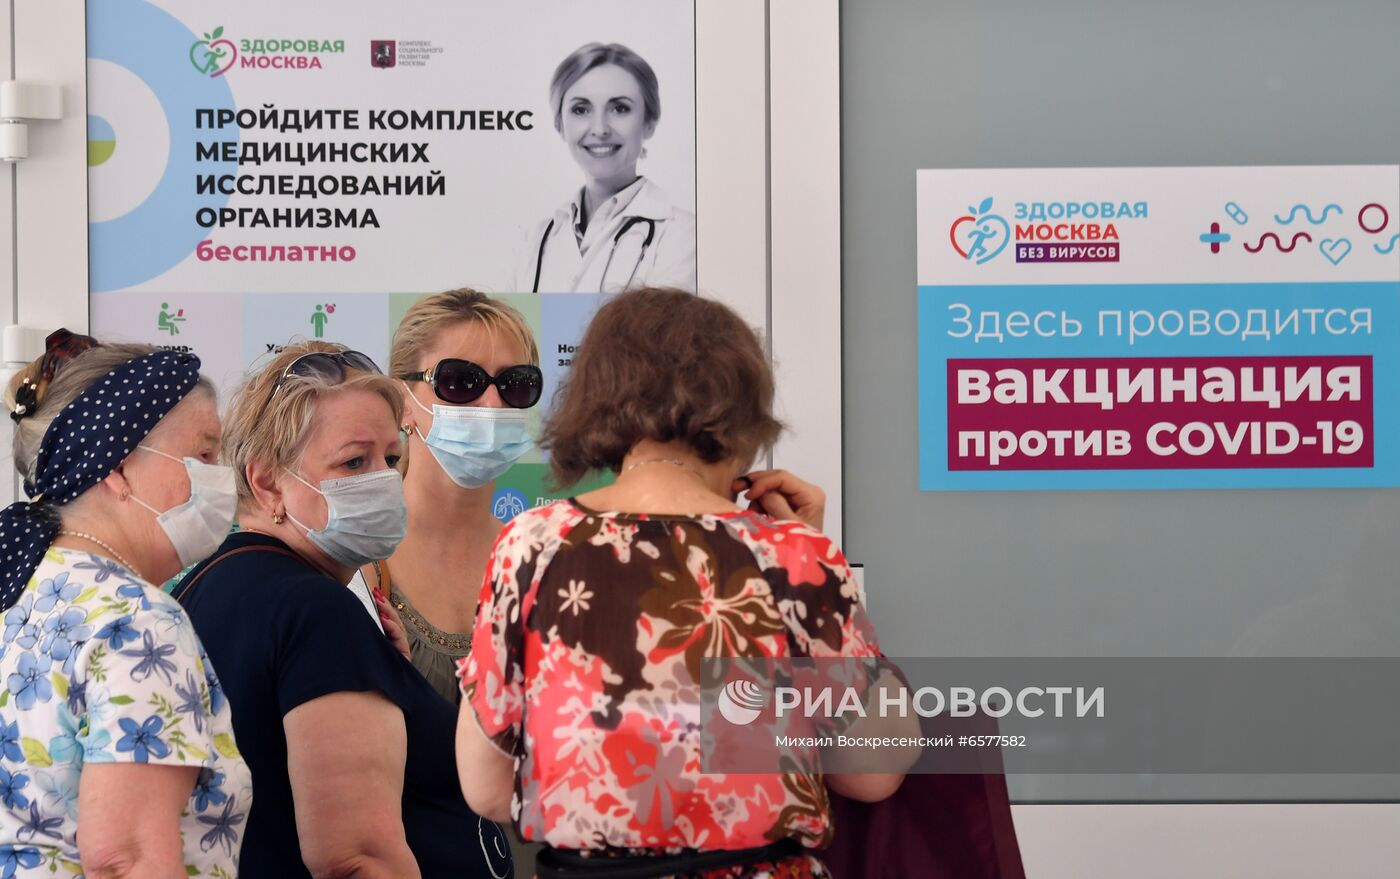 Павильоны "Здоровая Москва" переходят под работу исключительно для вакцинации от COVID-19